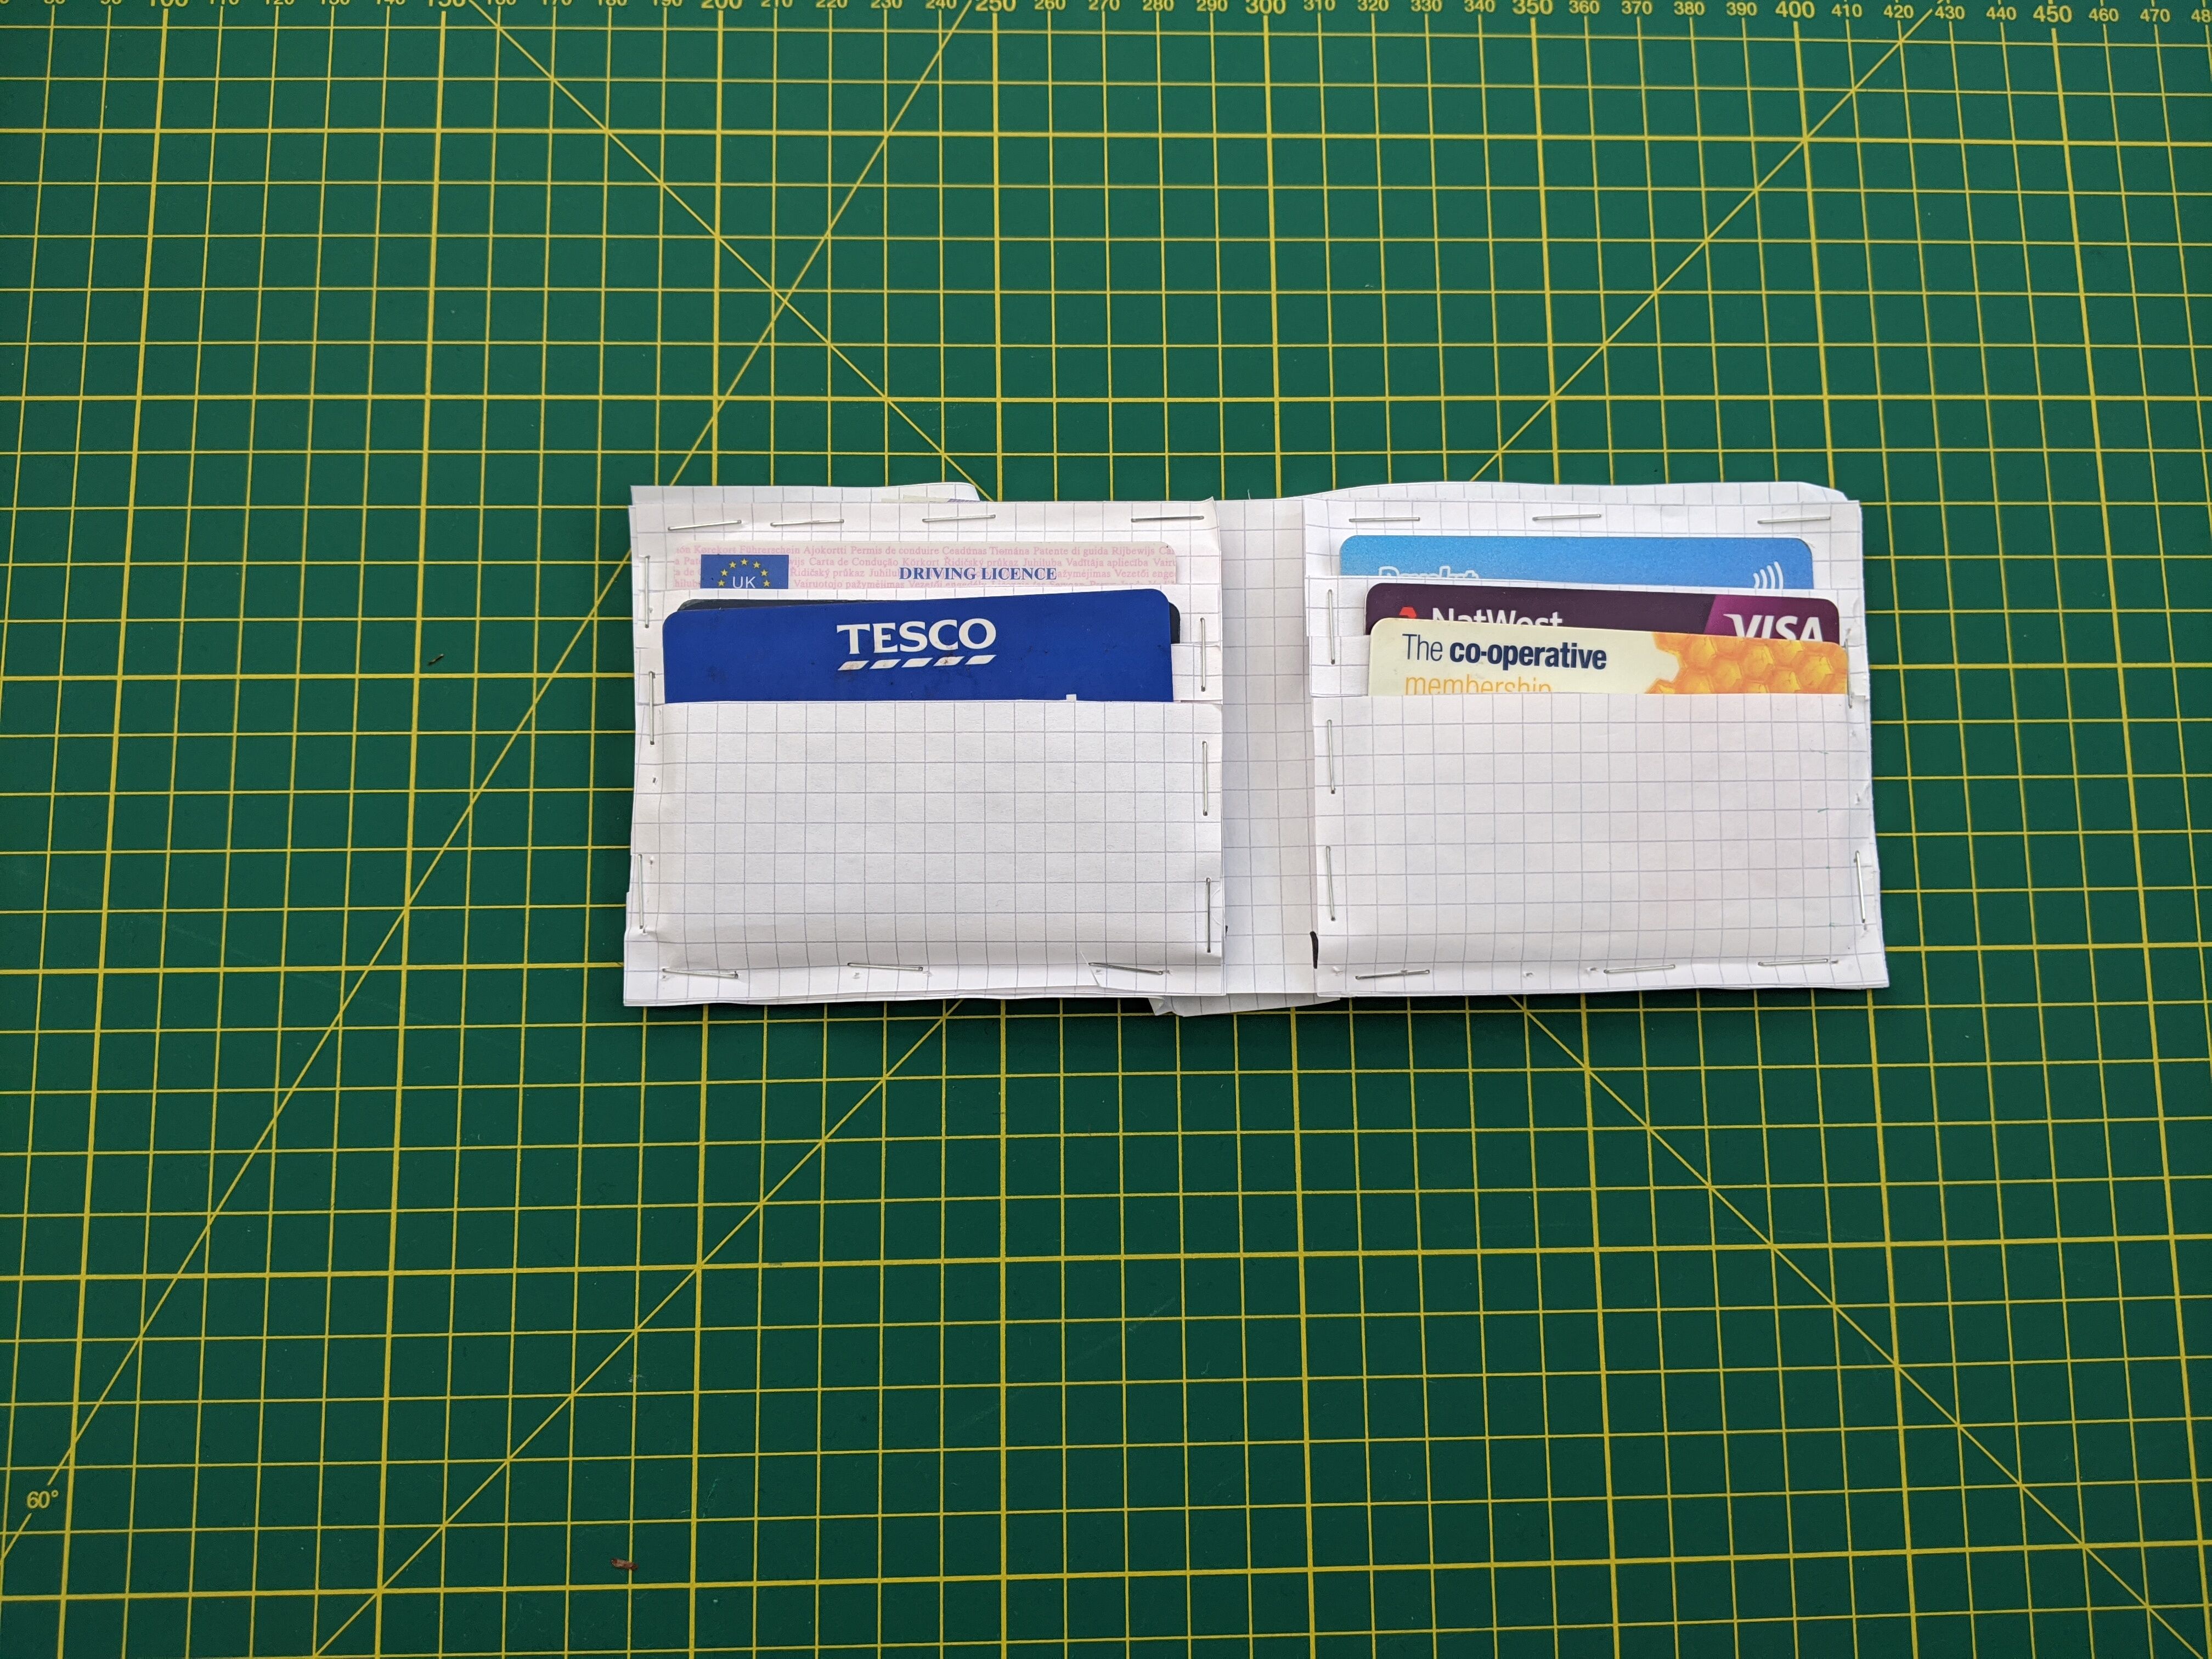 Paper prototype - flat.